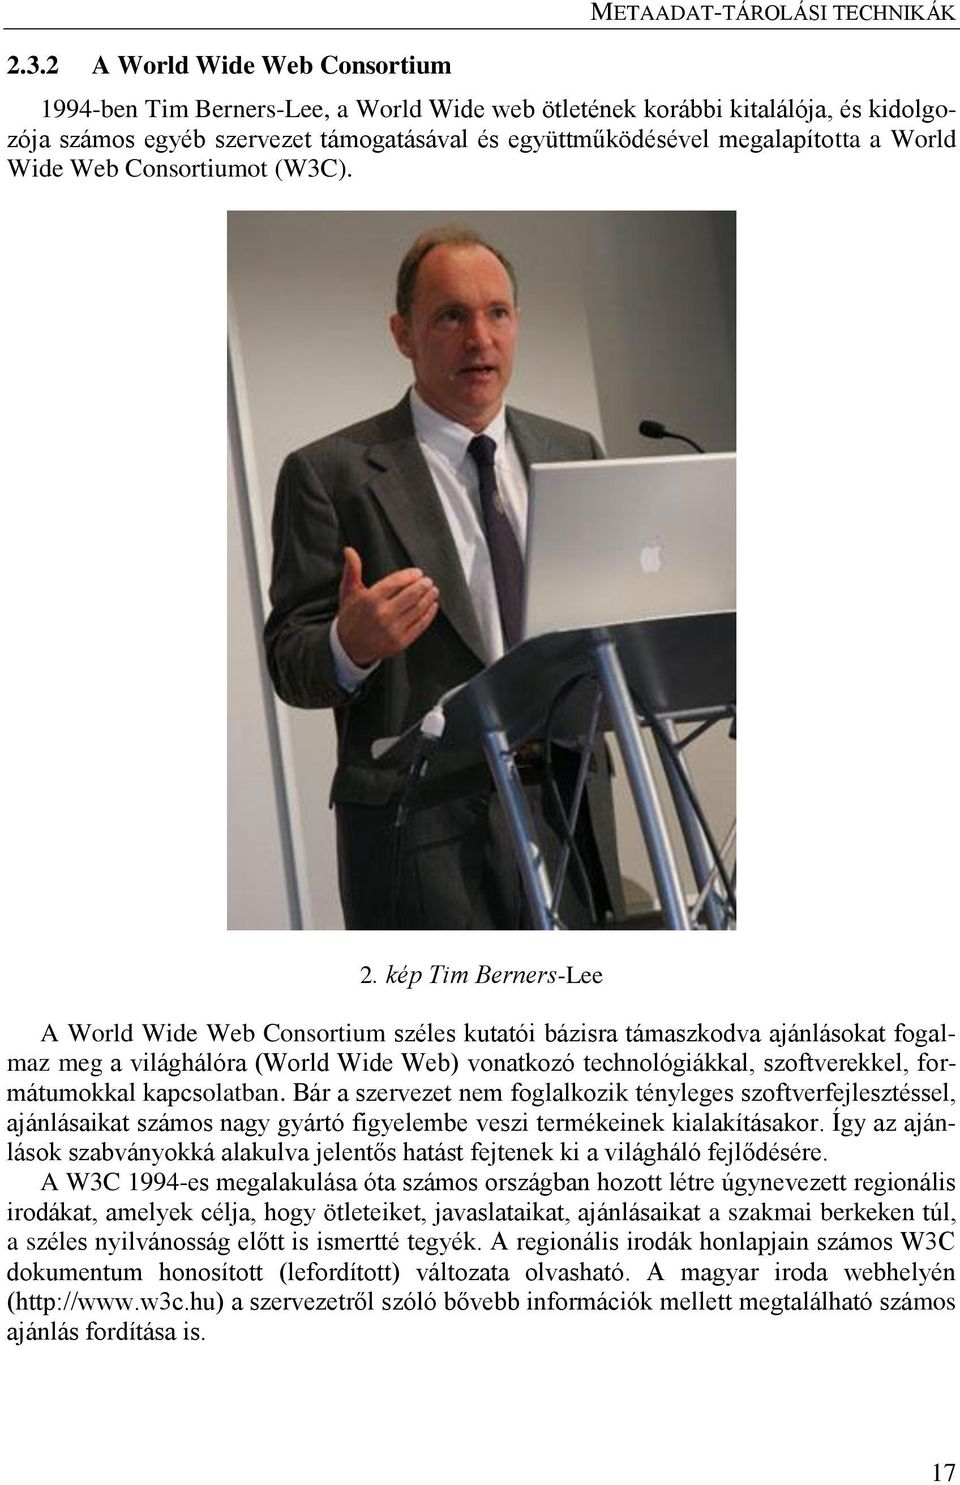 kép Tim Berners-Lee A World Wide Web Consortium széles kutatói bázisra támaszkodva ajánlásokat fogalmaz meg a világhálóra (World Wide Web) vonatkozó technológiákkal, szoftverekkel, formátumokkal